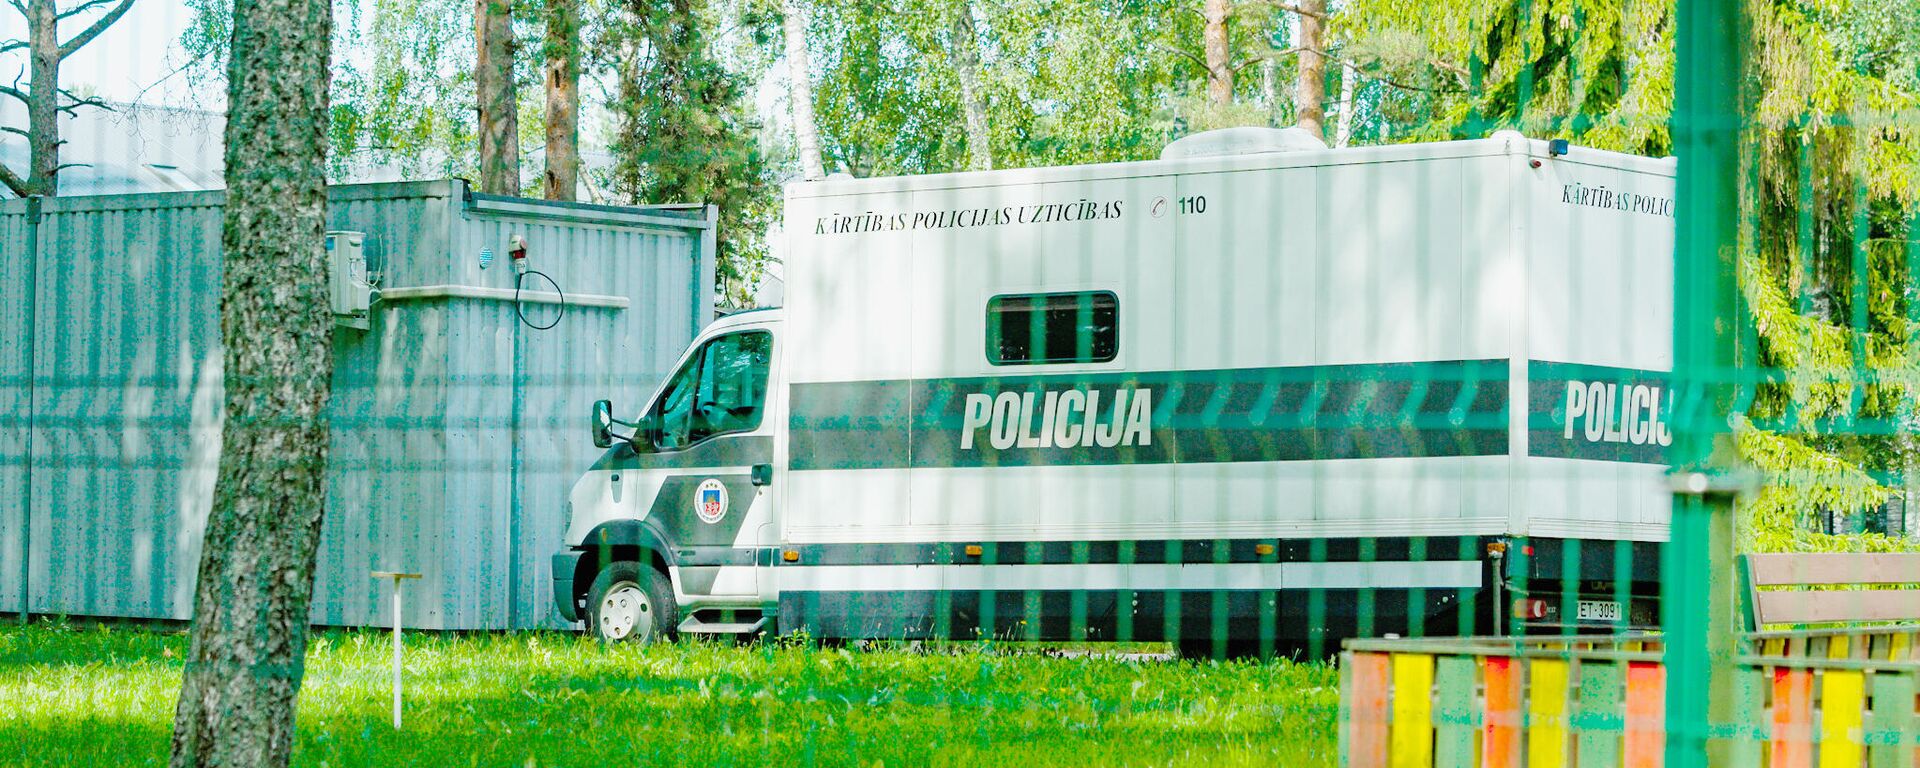 Полицейская машина для перевозки задержанных в Центре размещения беженцев в Муцениеки - Sputnik Латвия, 1920, 03.09.2021